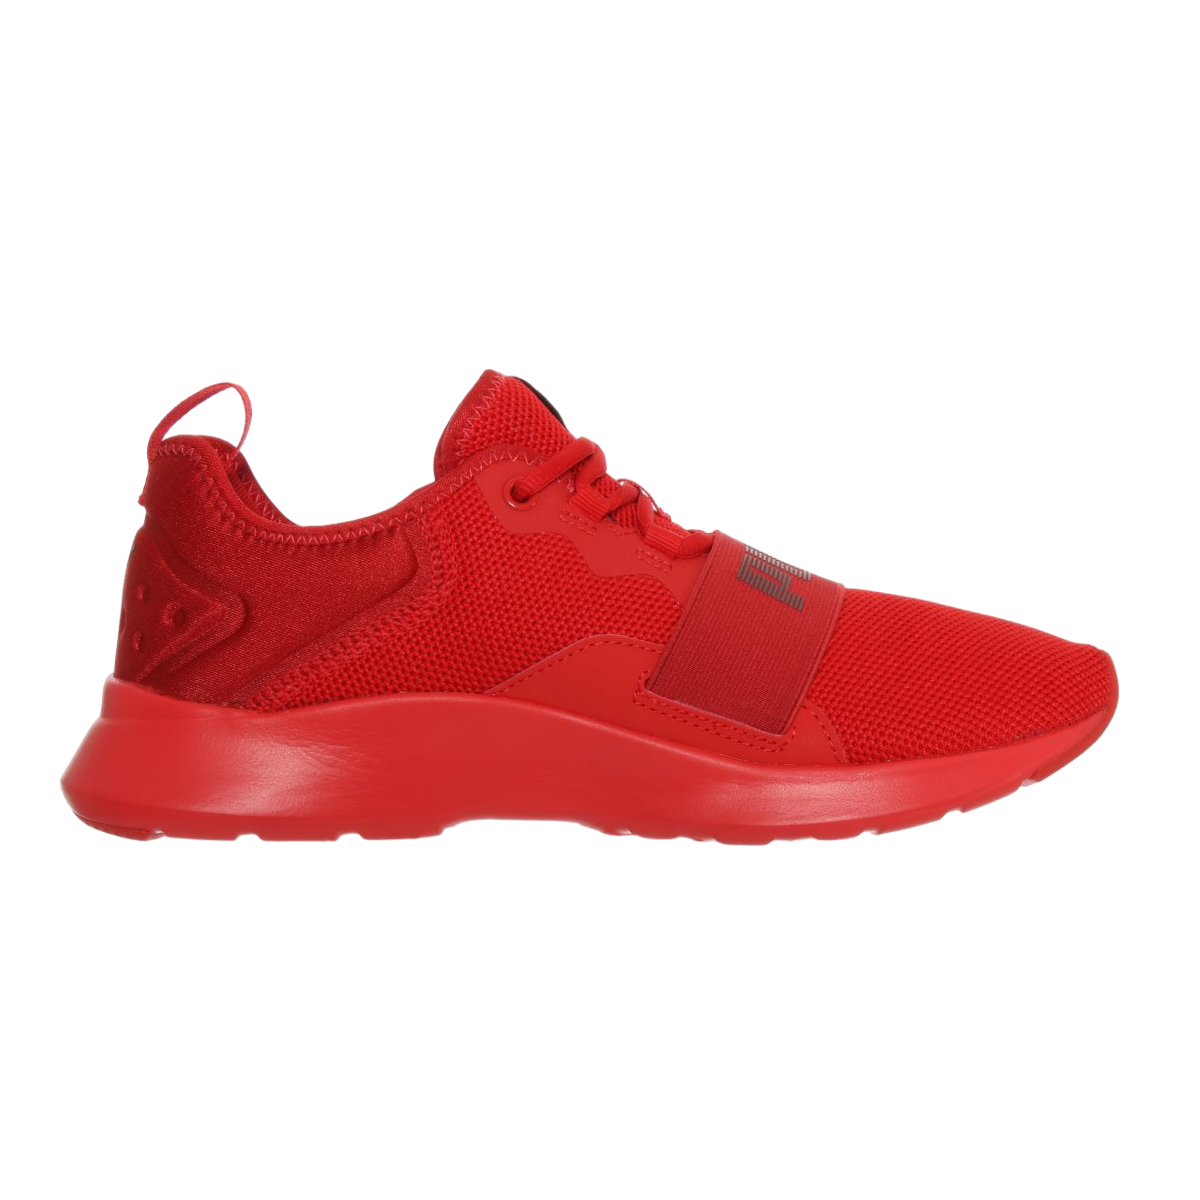 Puma scarpa sneakers da uomo Wired Pro 369126 03 rosso